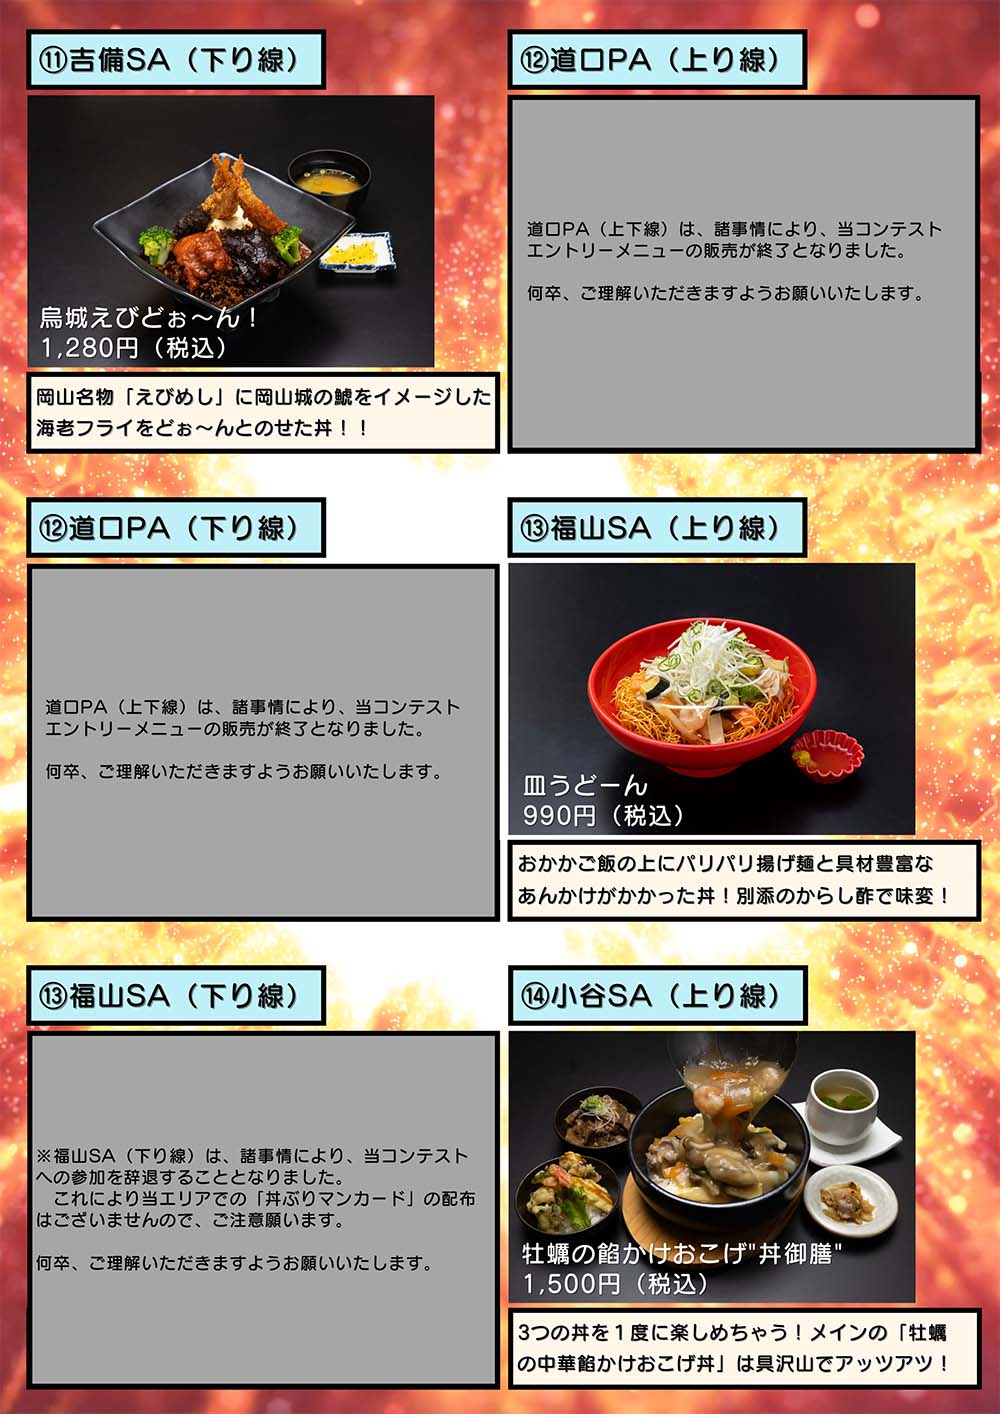 5人の丼ぶりマンを集めよう 丼メニューコンテスト22 を開催します Nexco西日本のsa Pa情報サイト